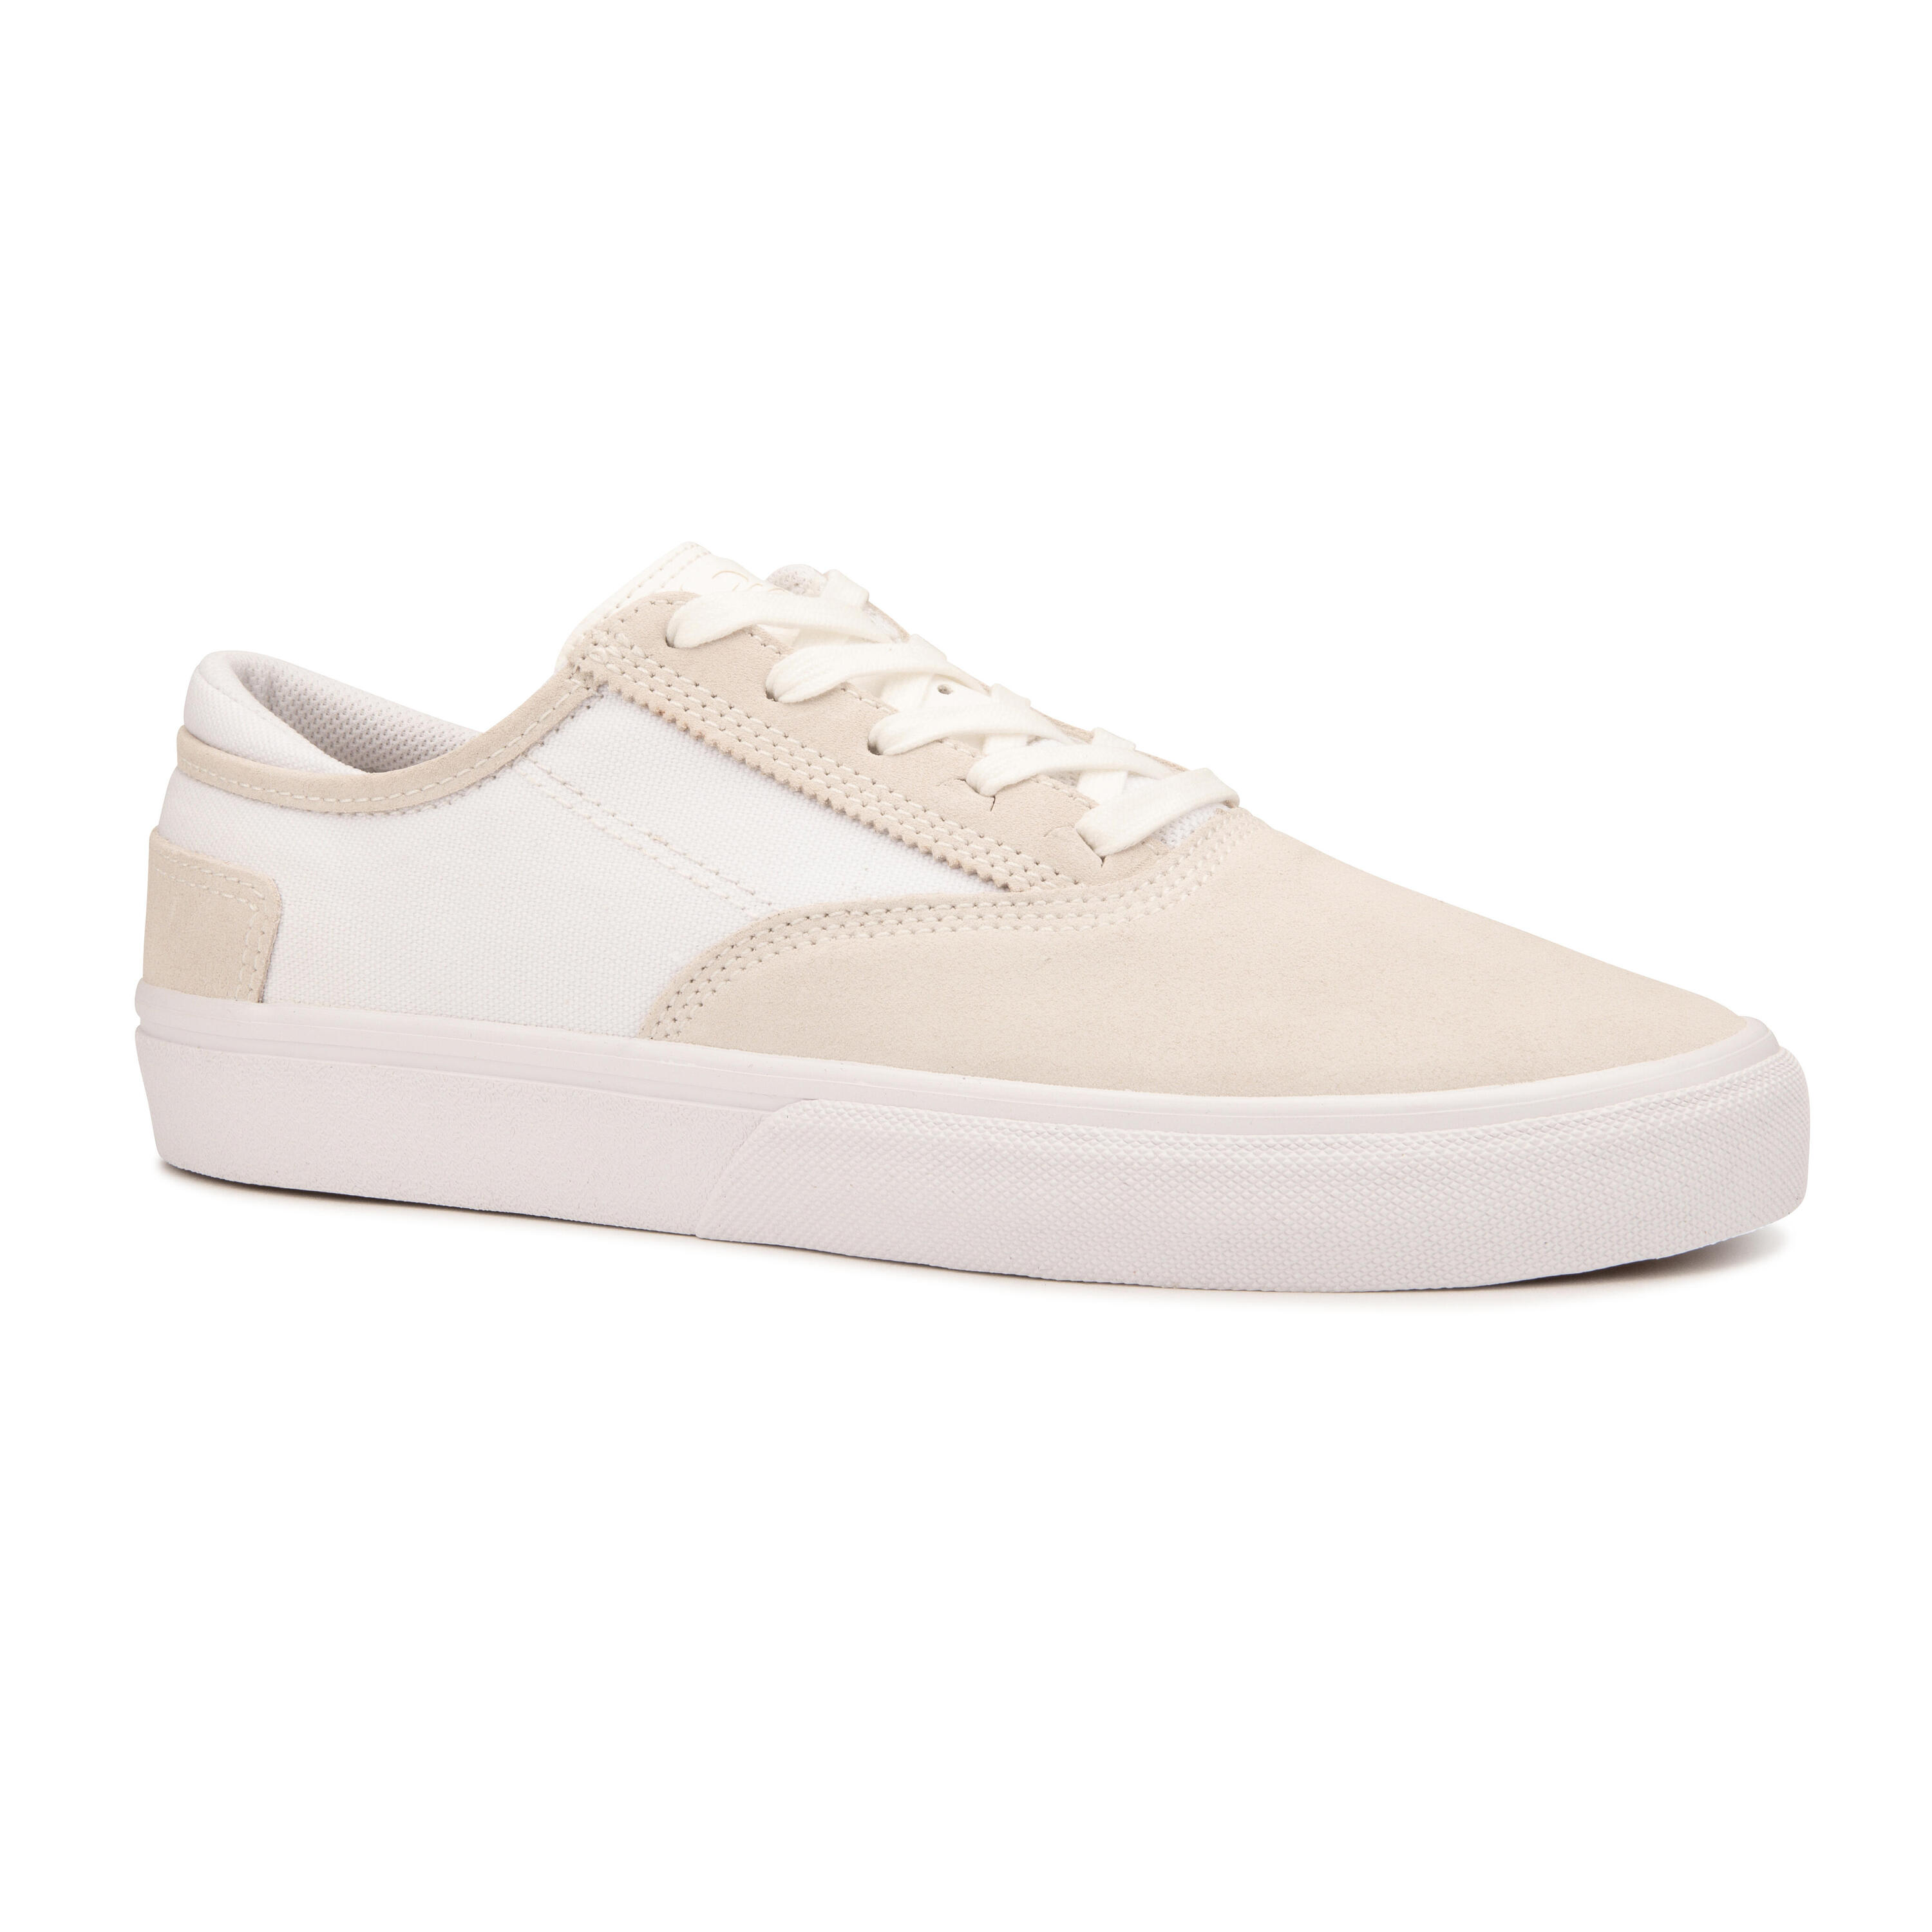 OXELO Adult Vulcanised Skate Shoes Vulca 500 II - White/White